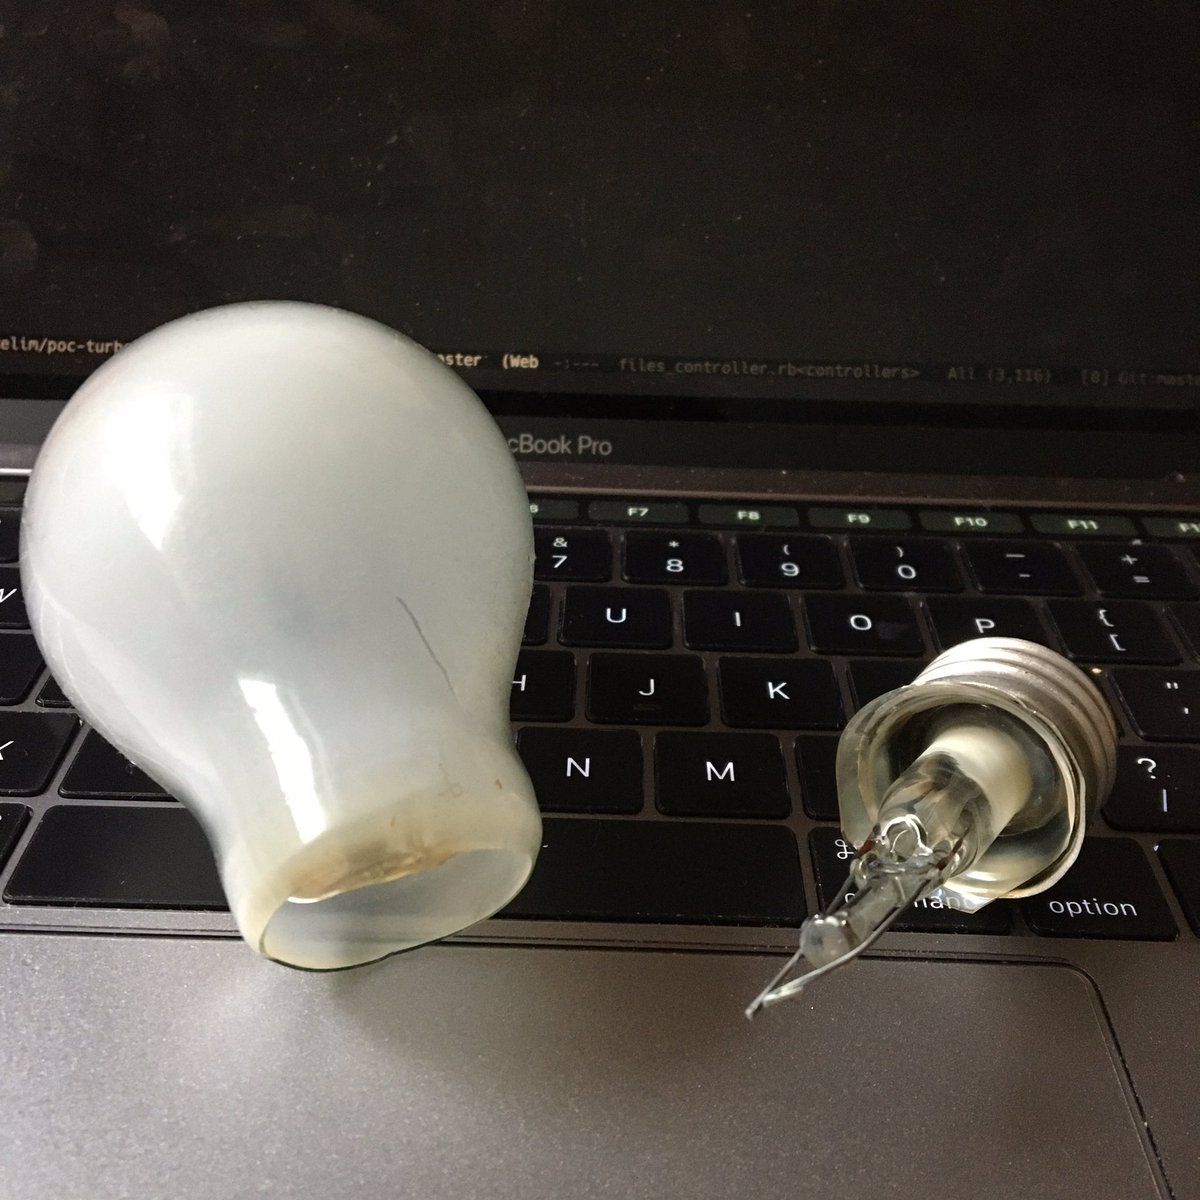 カフェイン中毒 電球 こんな位置から綺麗に割れて落ちることがある という学びを得ました T Co E4h2xrvyuc Twitter